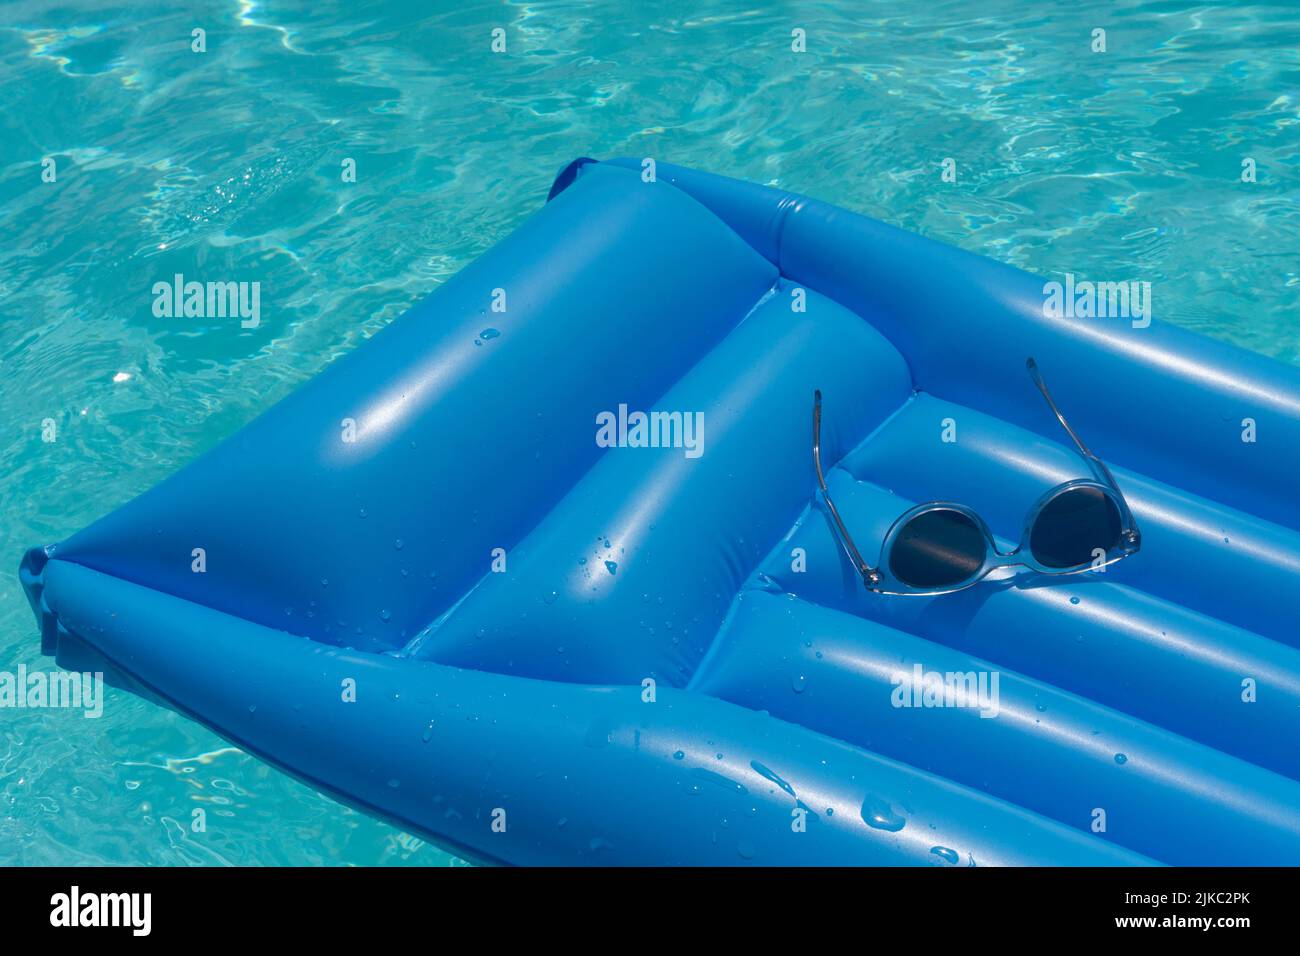 Sonnenbrillen auf einem blauen Schwimm-Schwimmer. Sommerferien Hintergrund Stockfoto